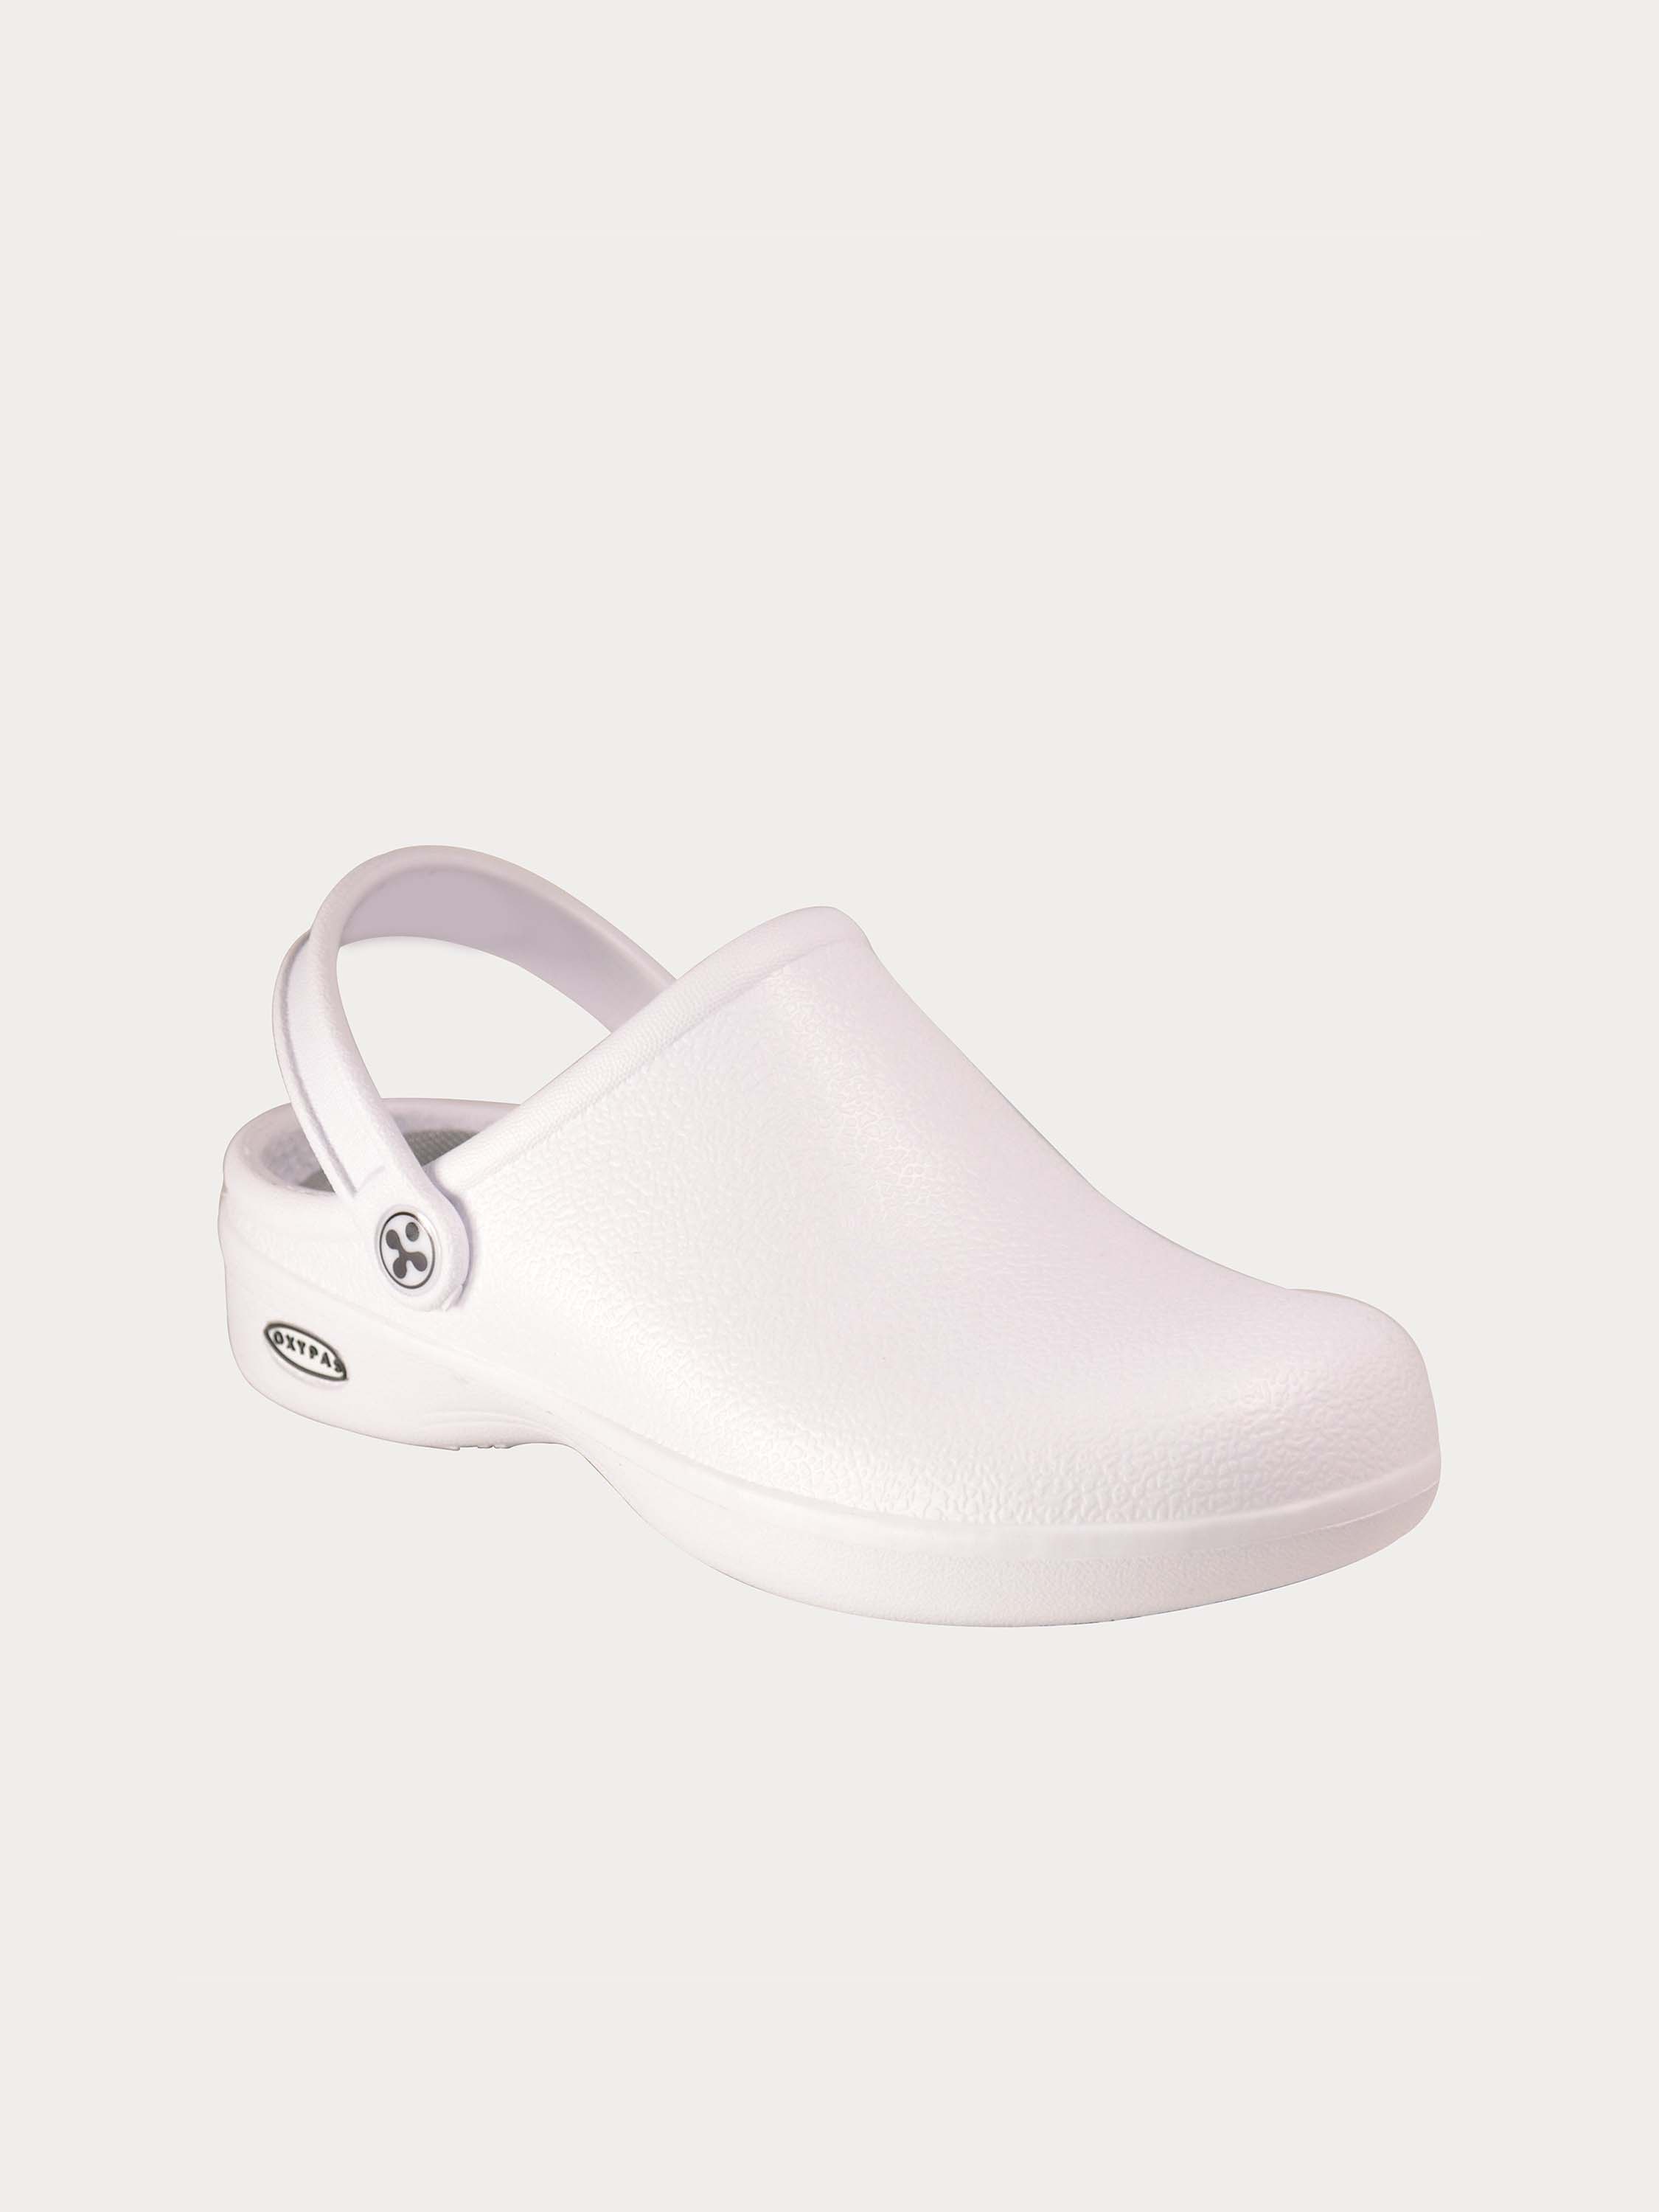 Oxypas Men's Bestlight 1 Safety Mule Shoes #color_White